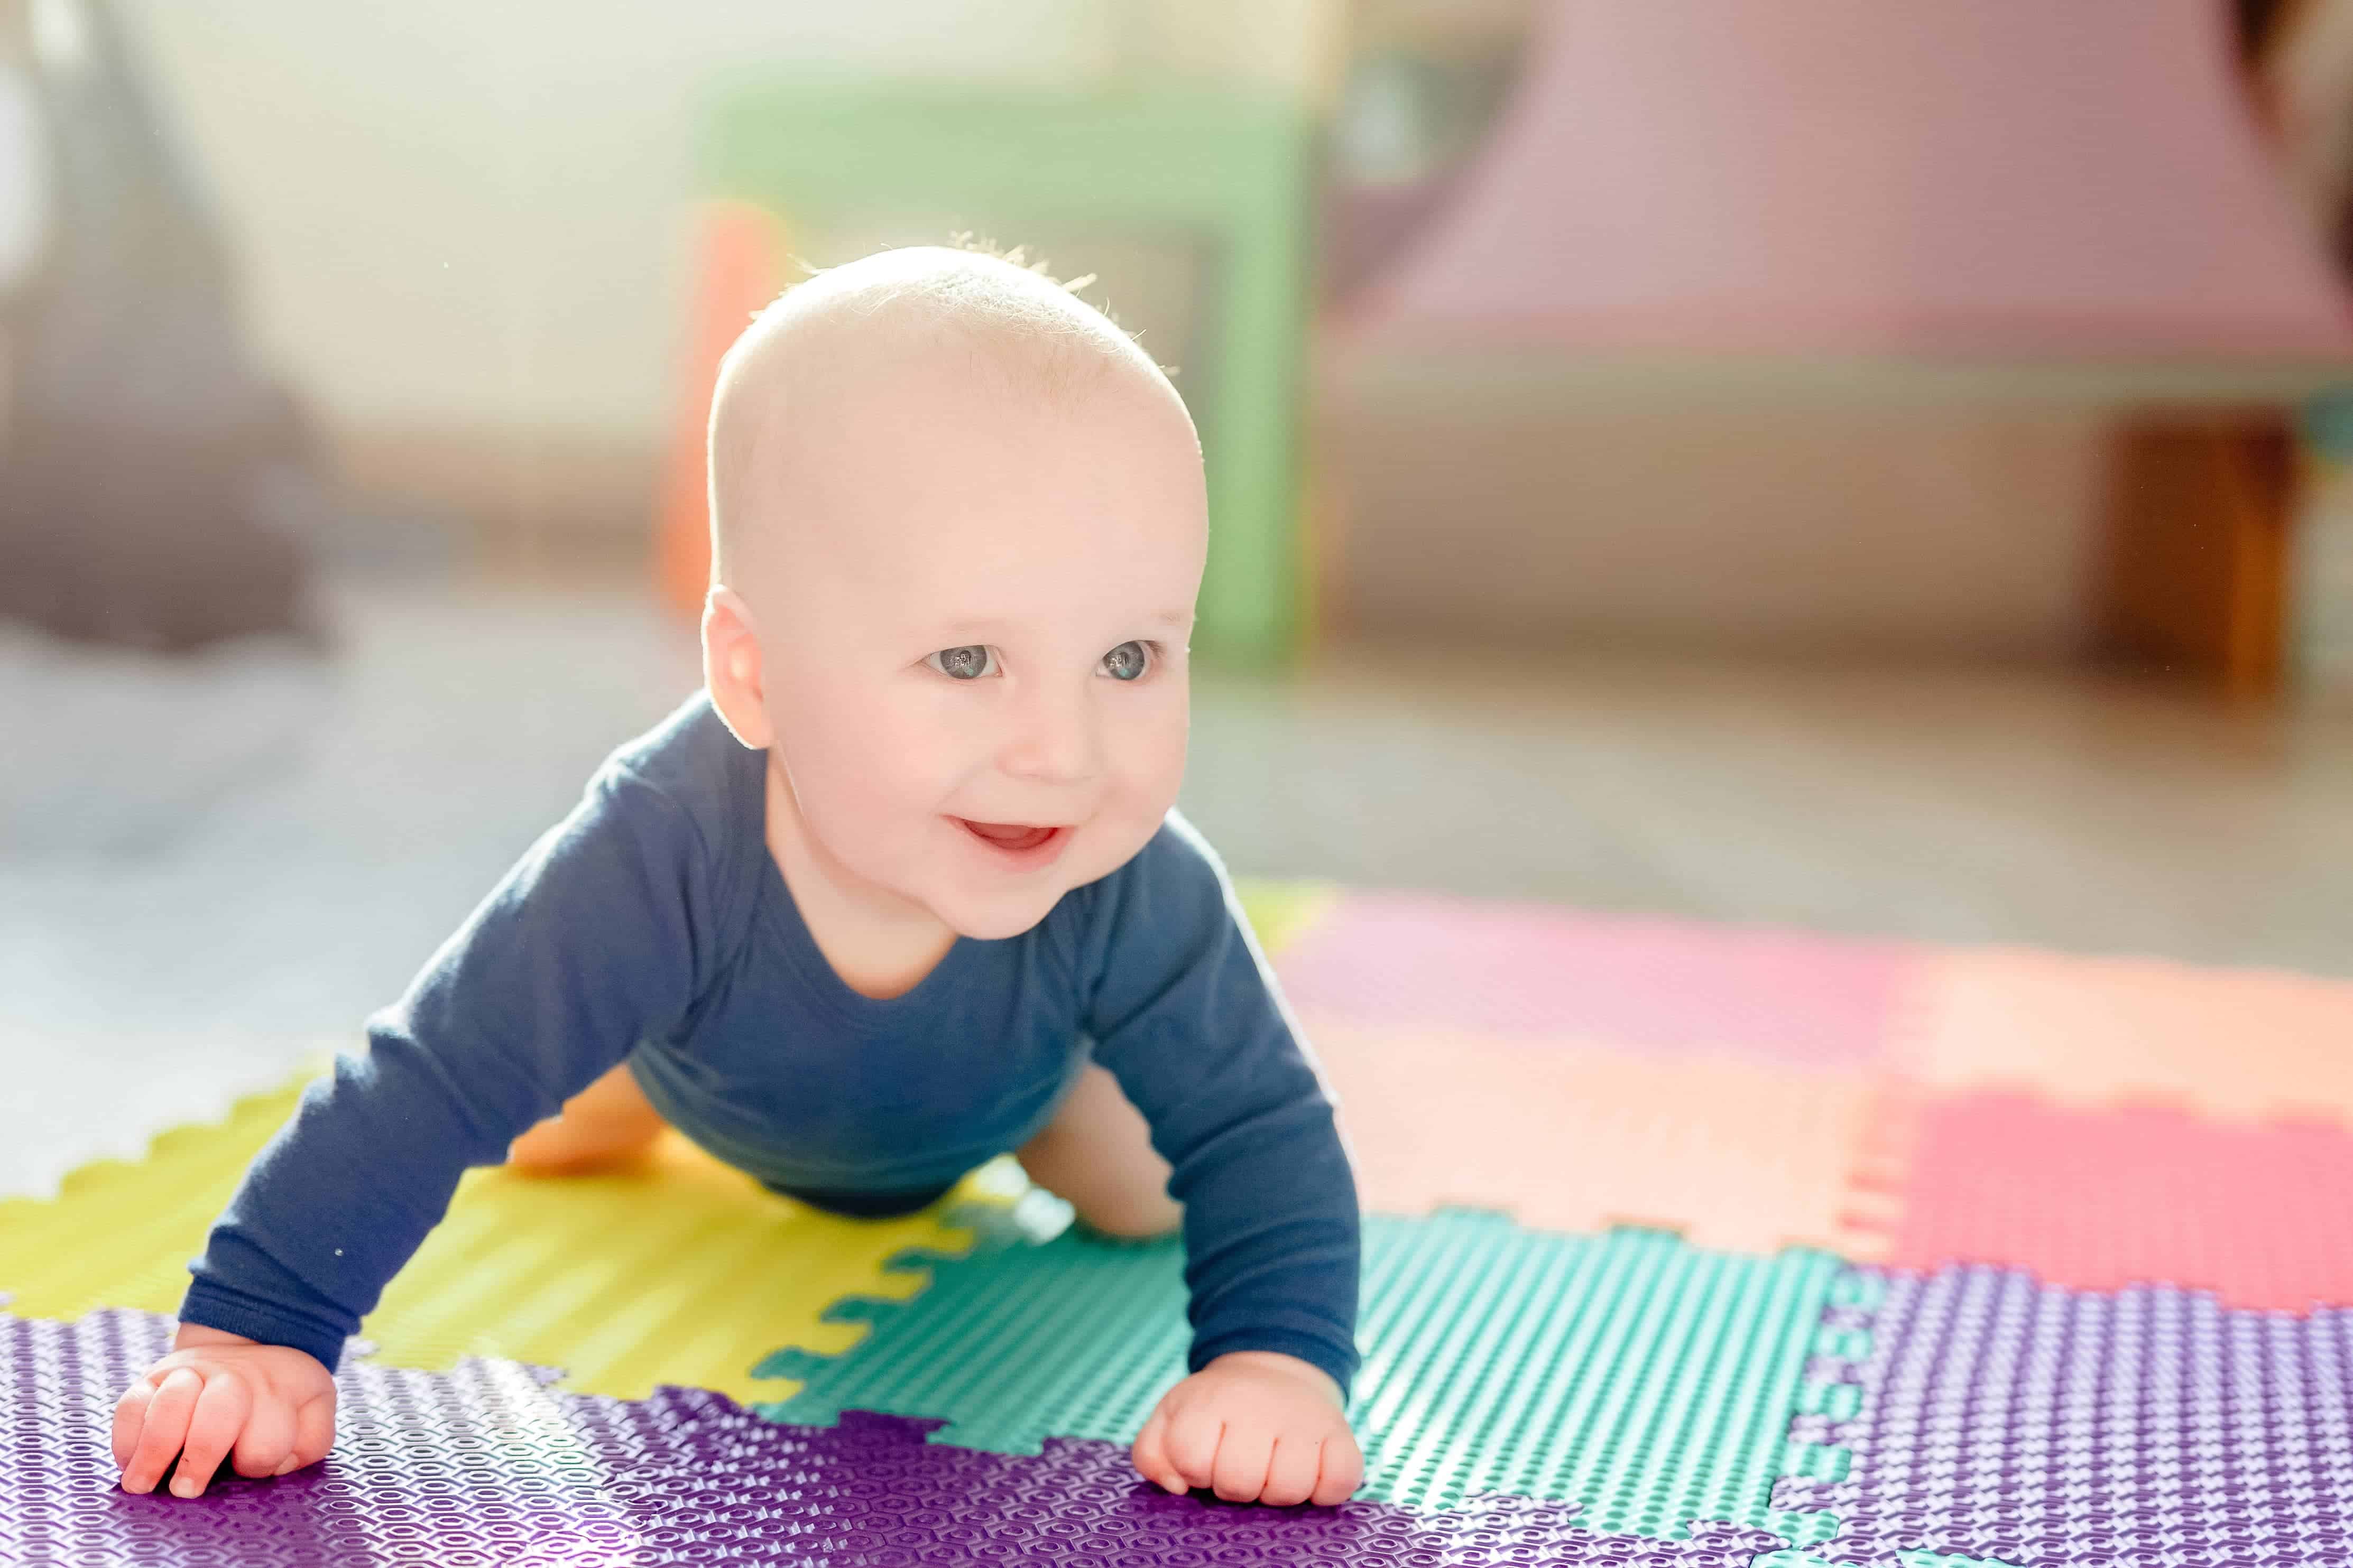 baby mat for hardwood floors